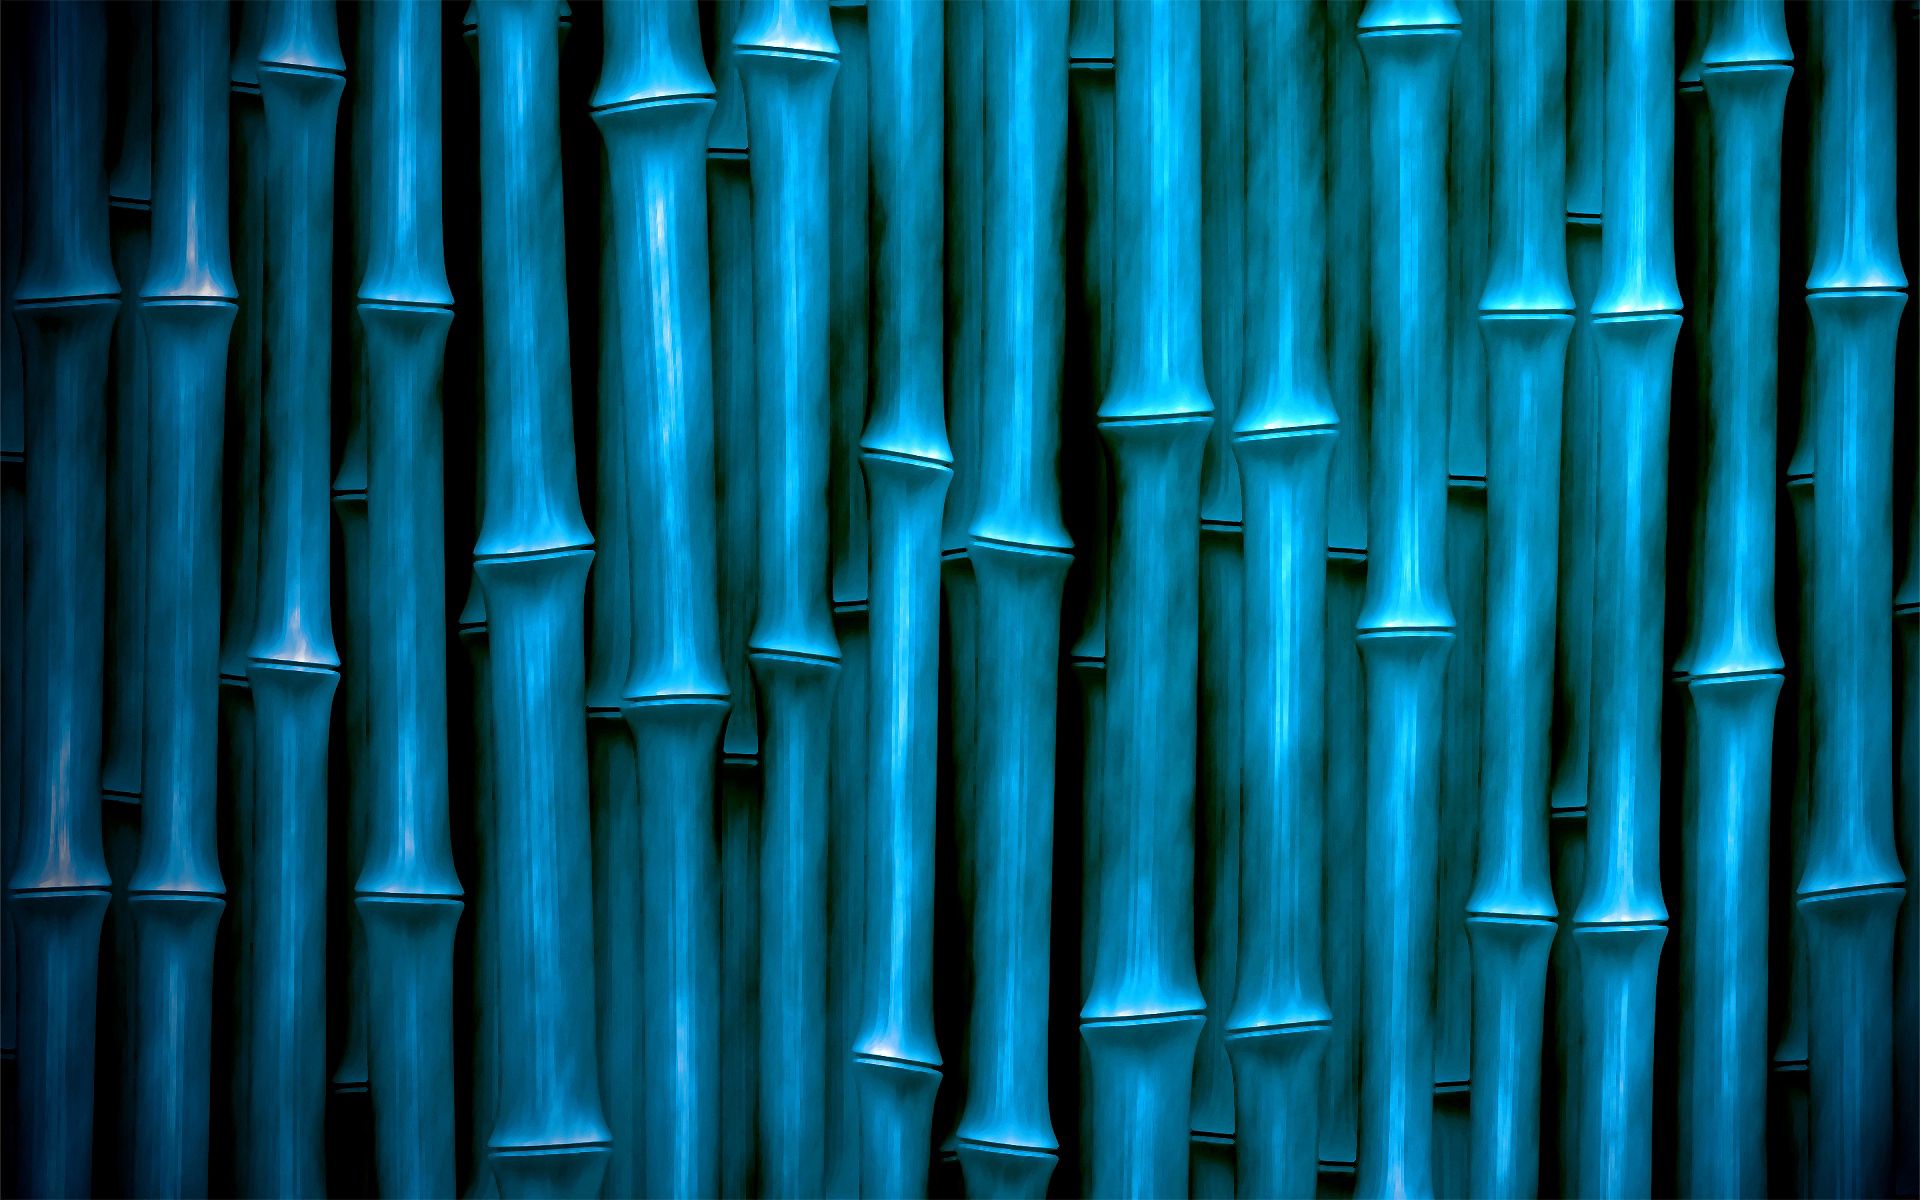 texture, textures, bamboo, vertical, sticks, stick